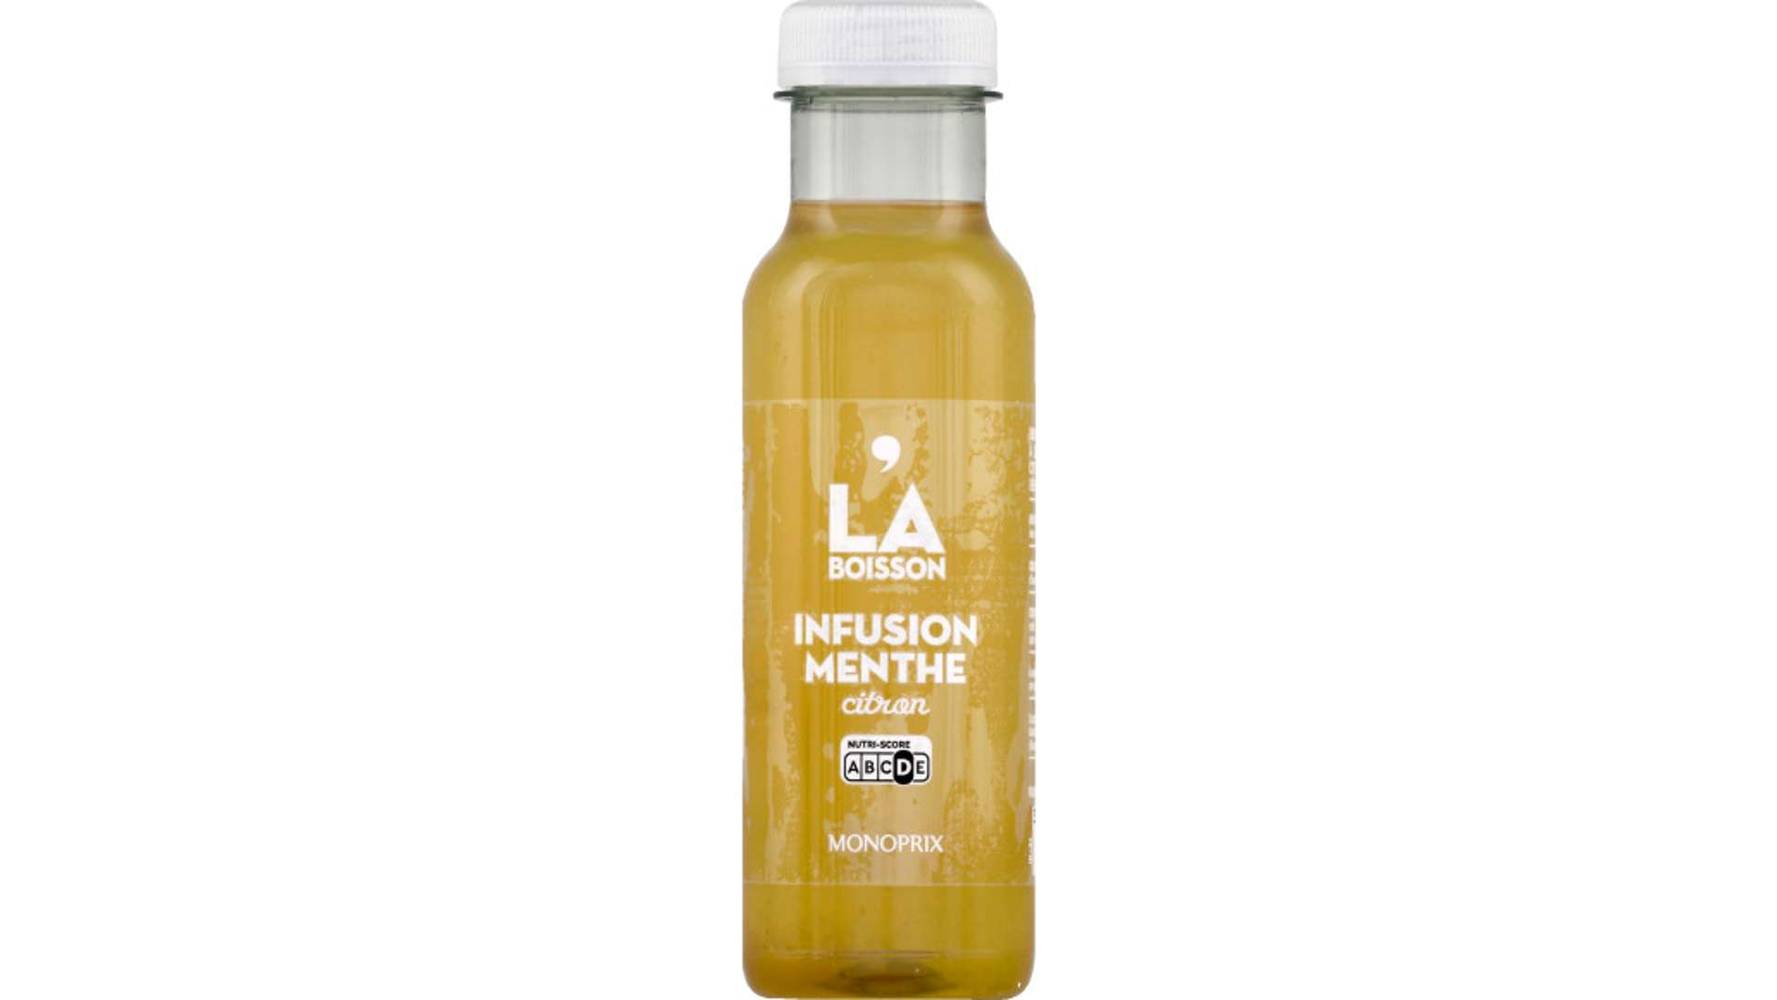 Monoprix - Boisson infusion (330 ml) (menthe-citron)